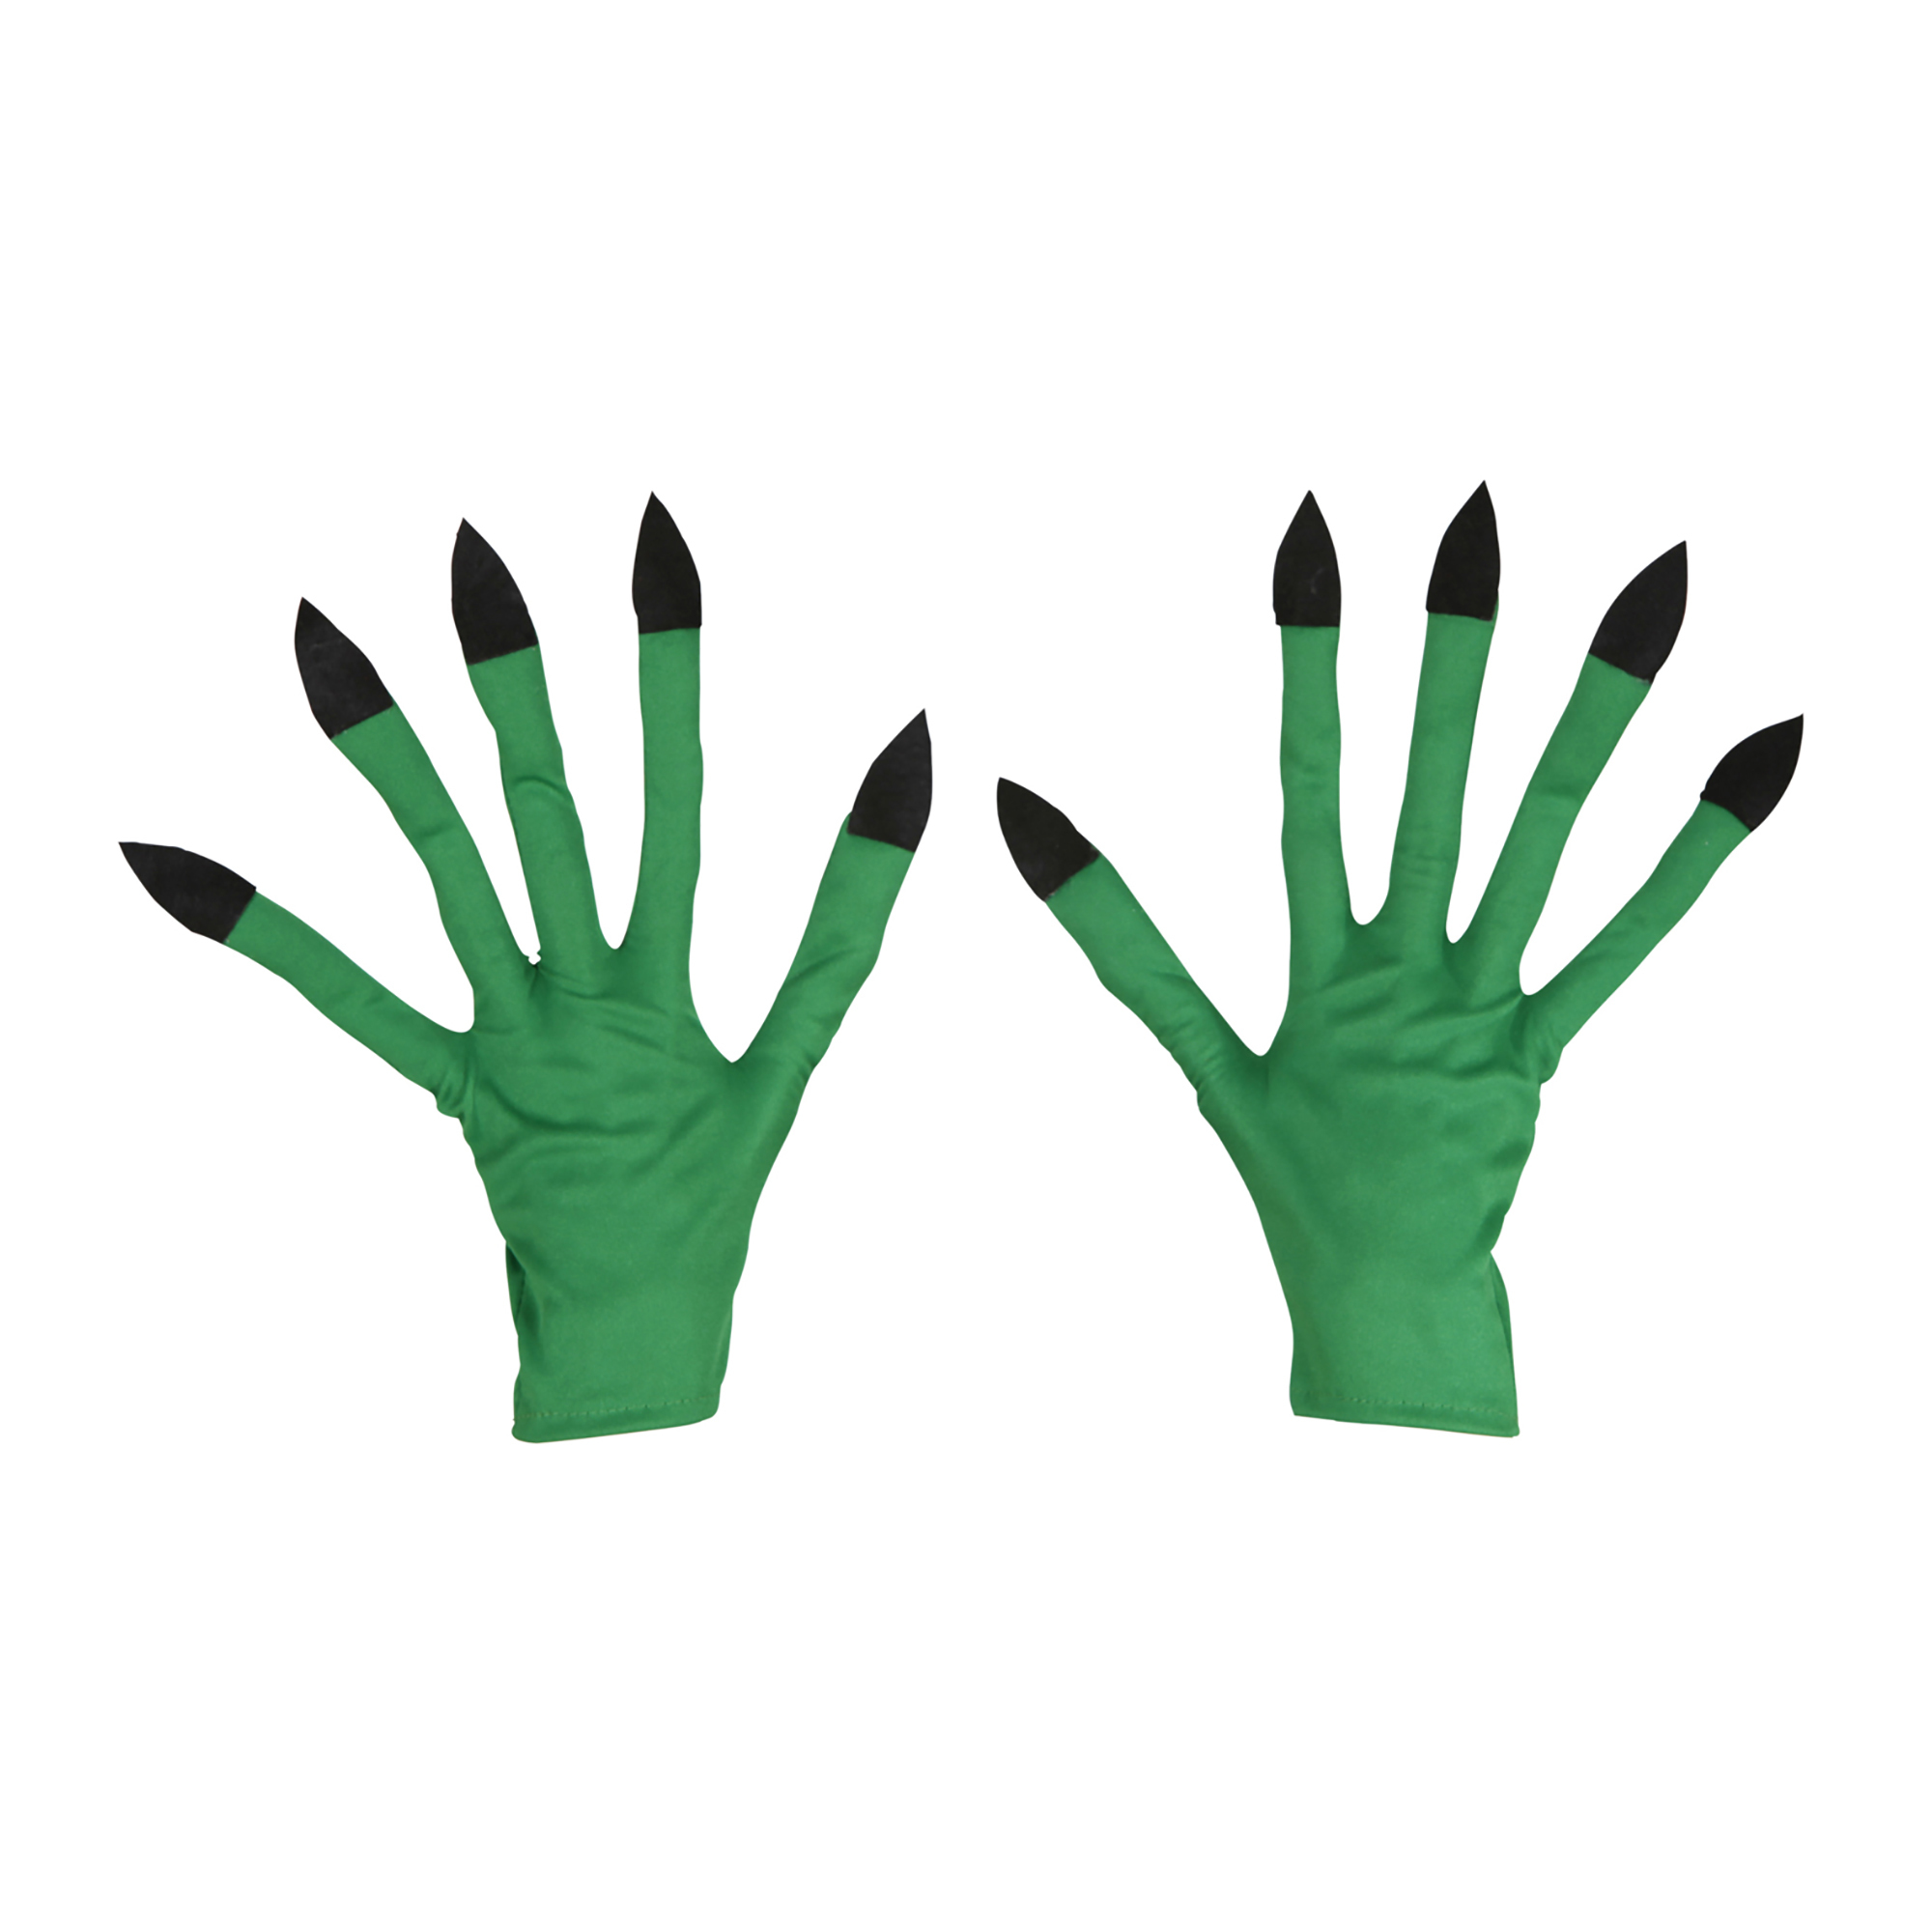 Groene heksen handschoenen met zwarte nagels